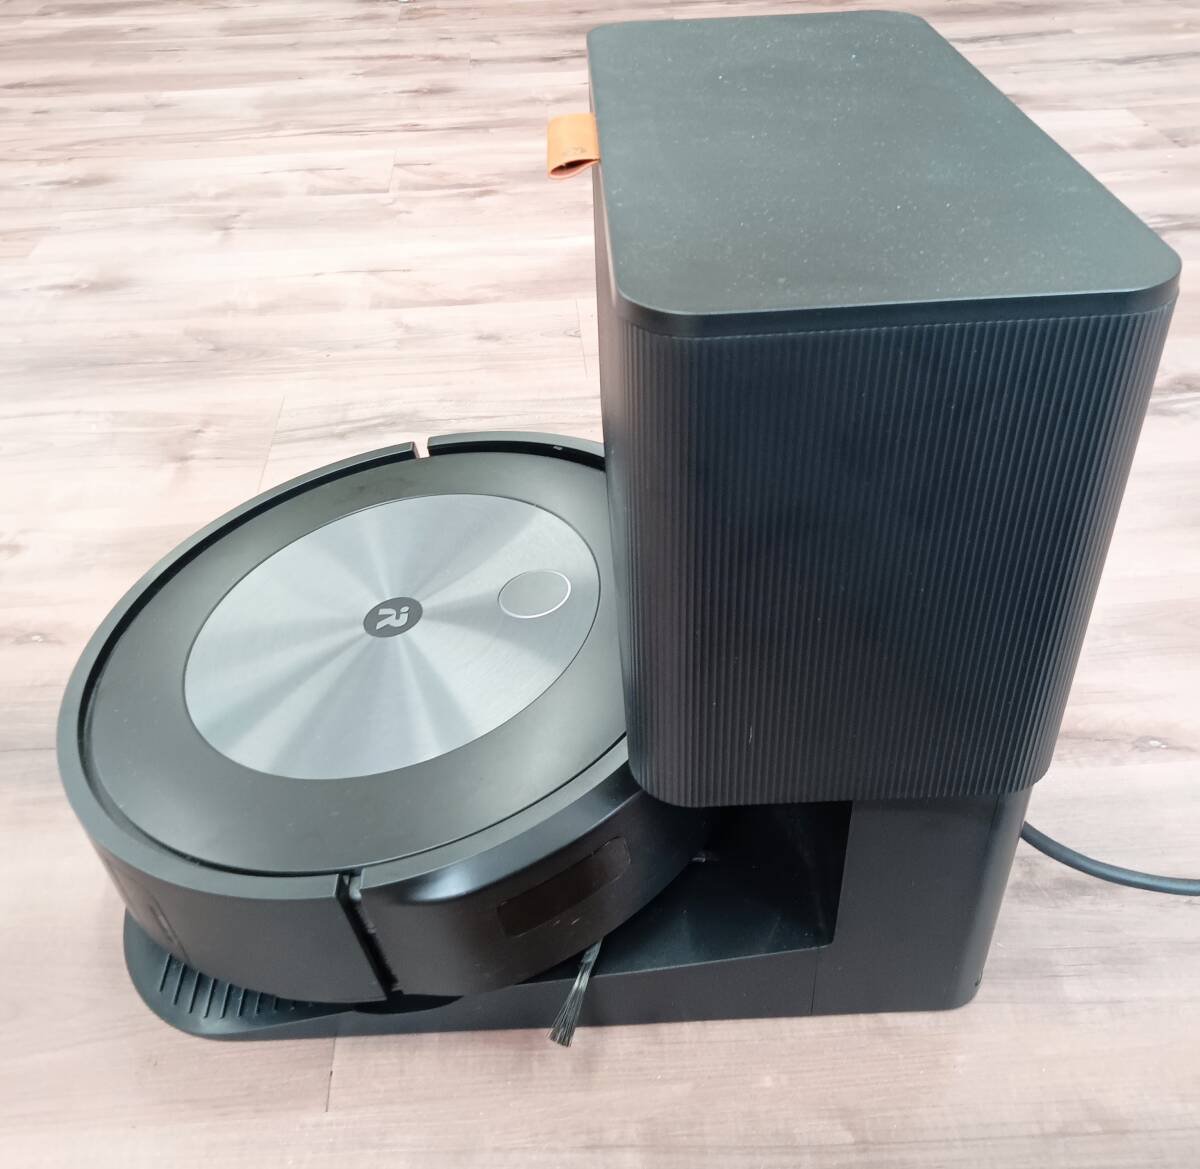 [ прекрасный товар ] iRobot( I робот )Roomba j7+ clean основа приложен робот пылесос roomba j755860